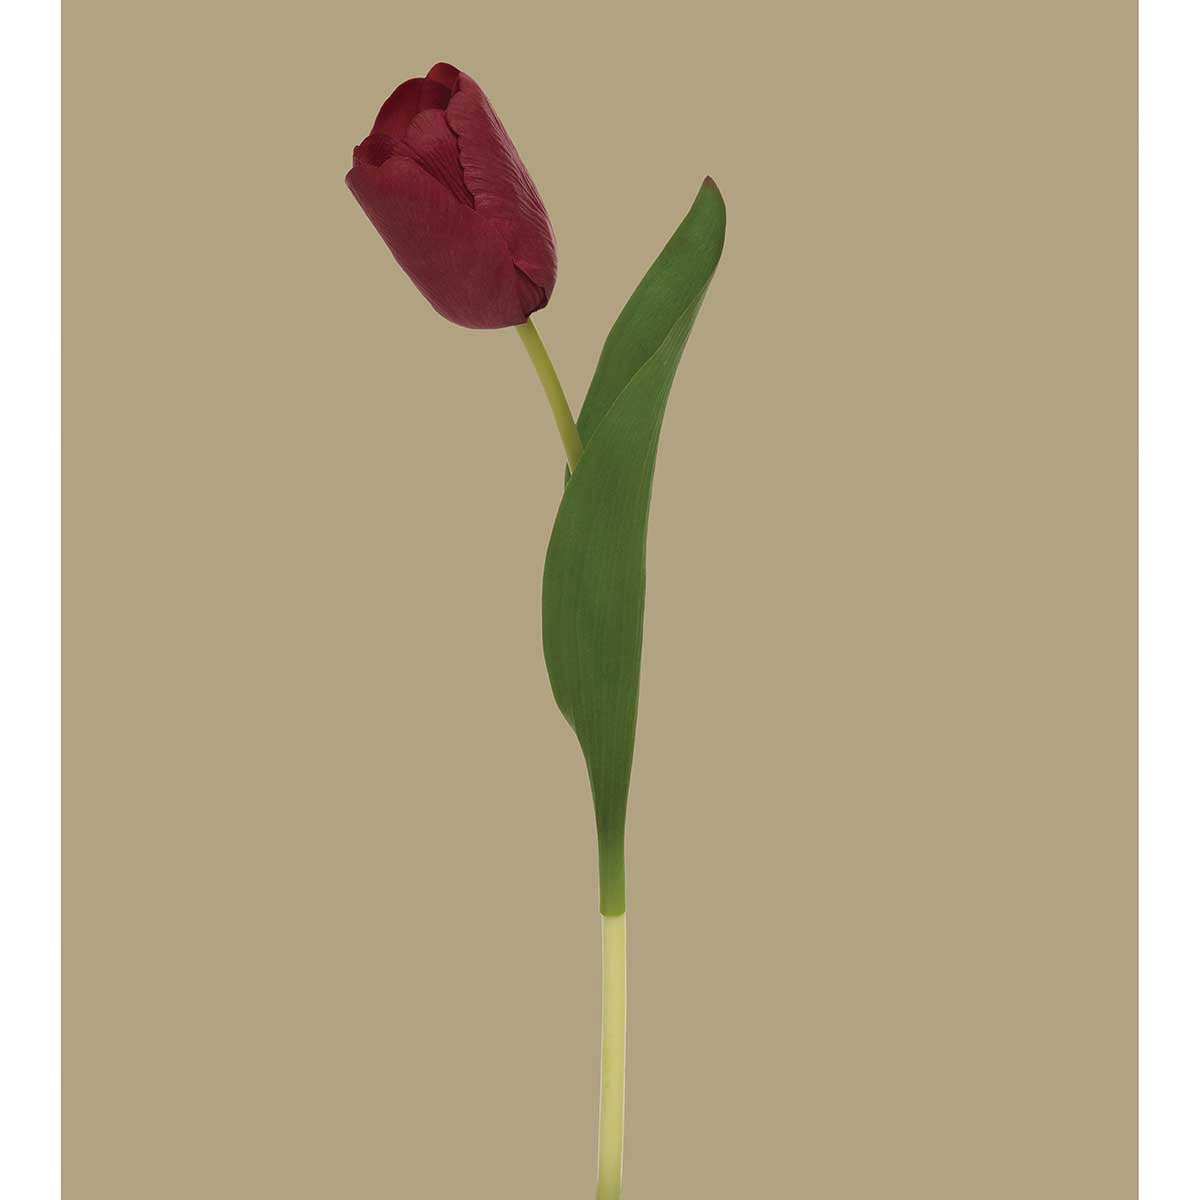 Dutch Tulip. Red